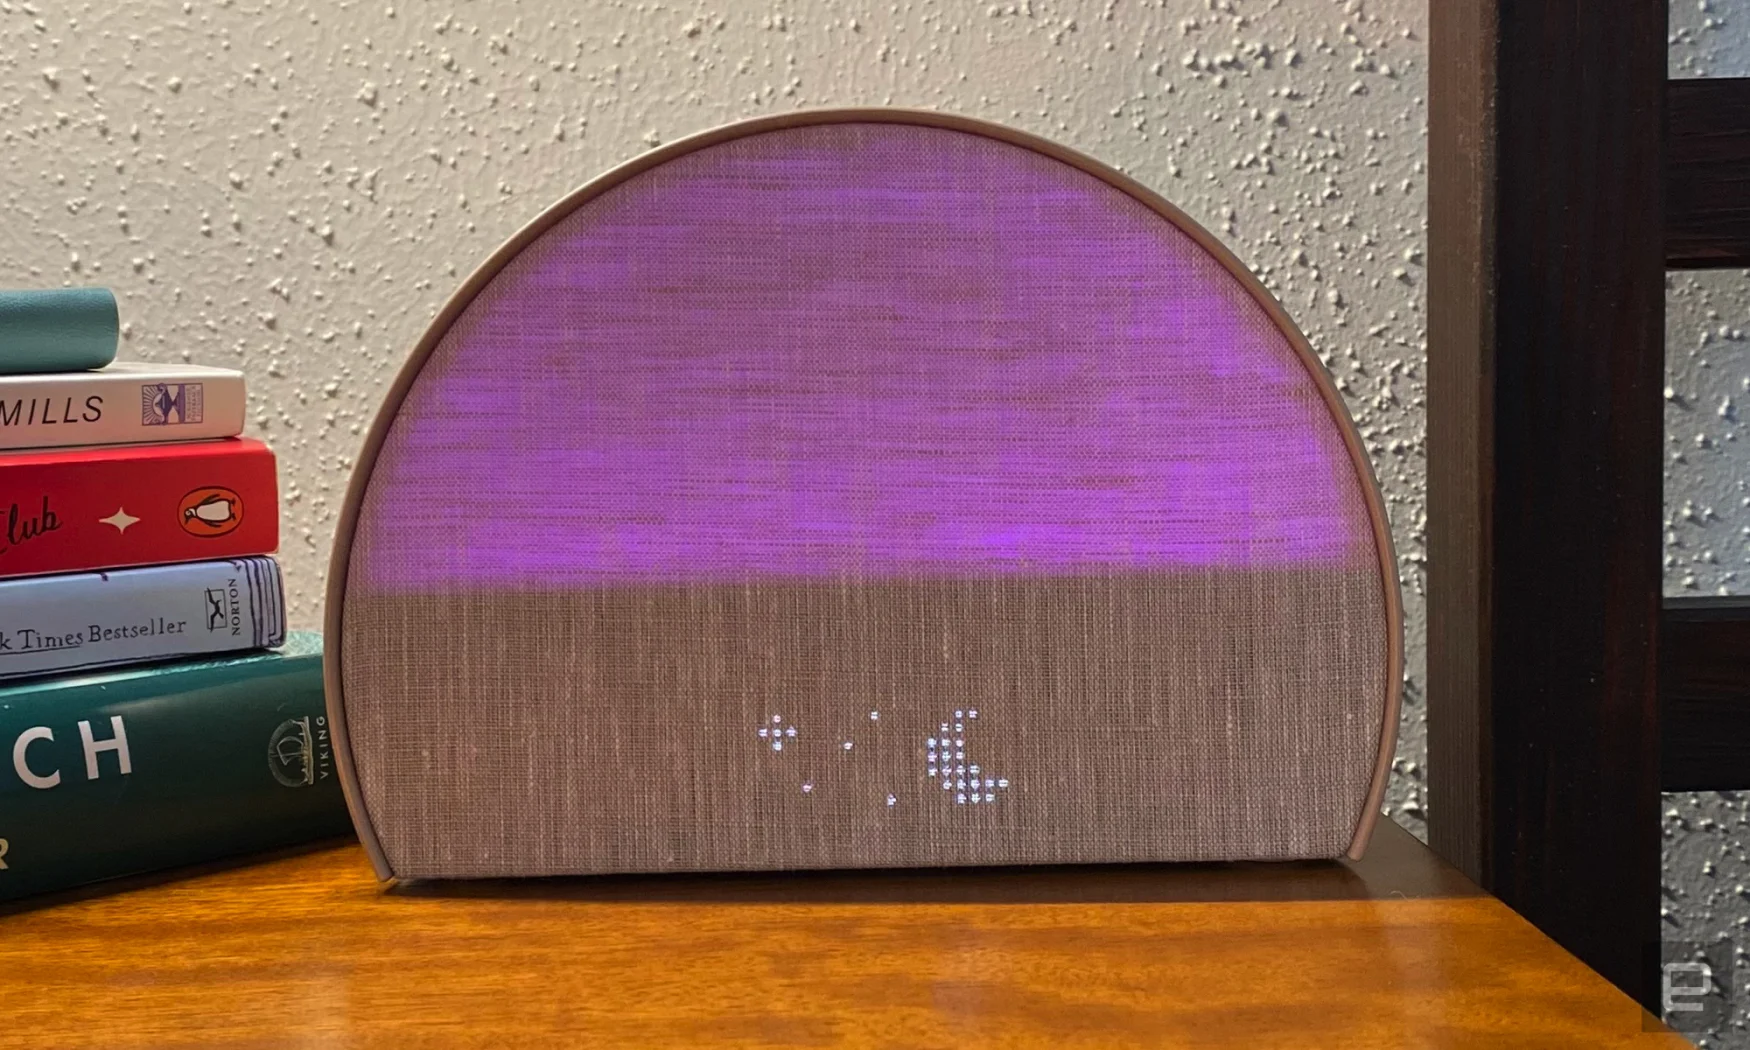 Le Hatch Restore 2 s'allume en violet et affiche une lune et des étoiles à matrice de points.  L'unité repose sur une table de chevet en bois et le coin de quelques livres sont empilés en arrière-plan. 